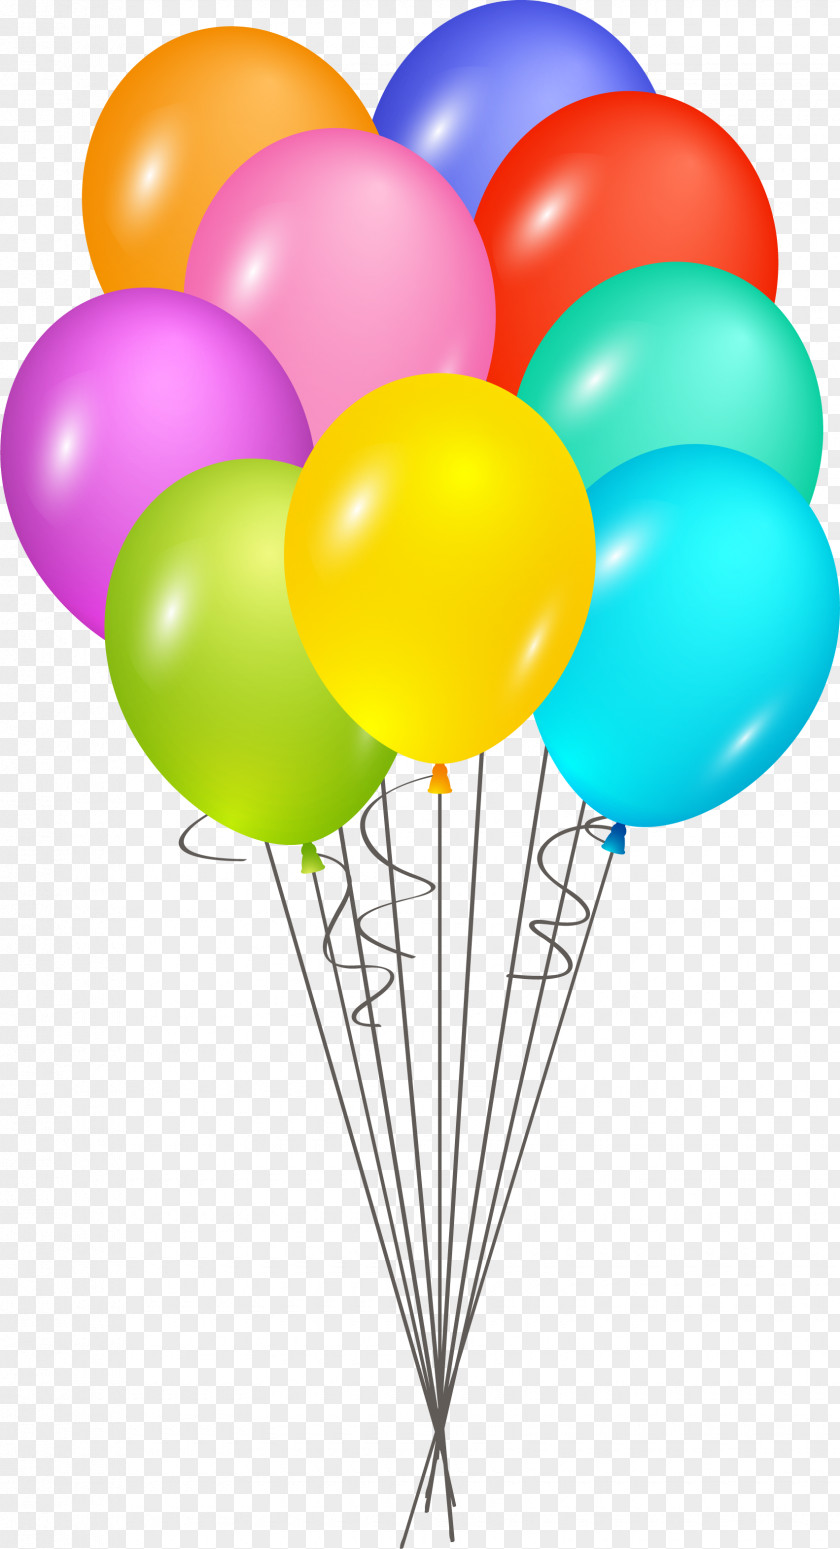 Color Cartoon Happy Birthday Balloon Cake Elk Island Public Schools Regional Division No. 14 Greeting Card PNG